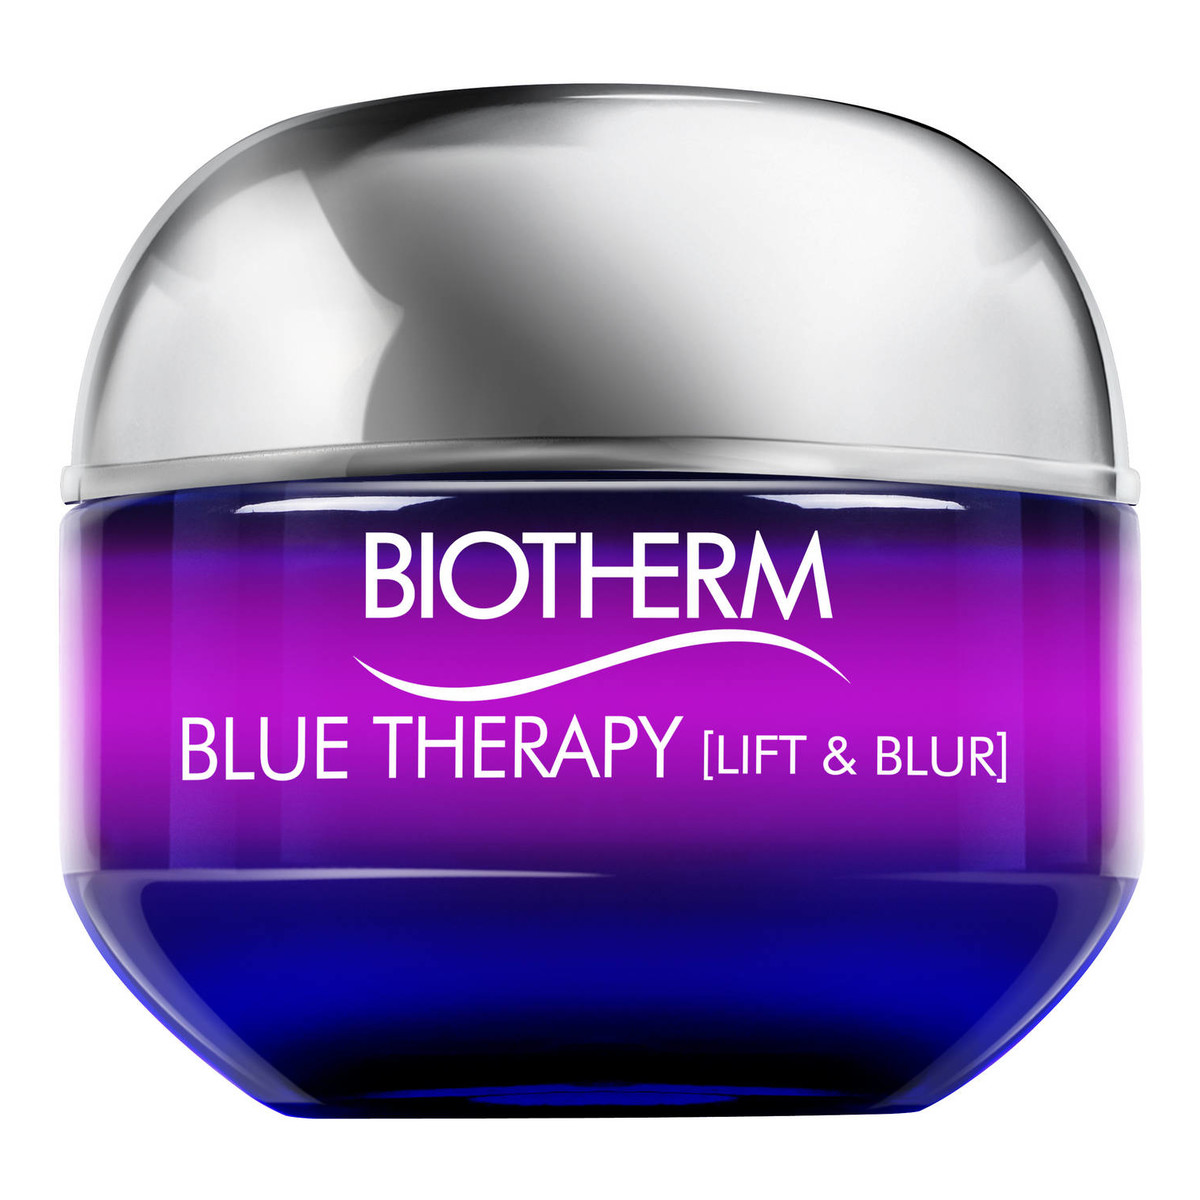 Biotherm Blue Therapy kompleksowy krem liftingujący do każdego rodzaju do skóry 50ml